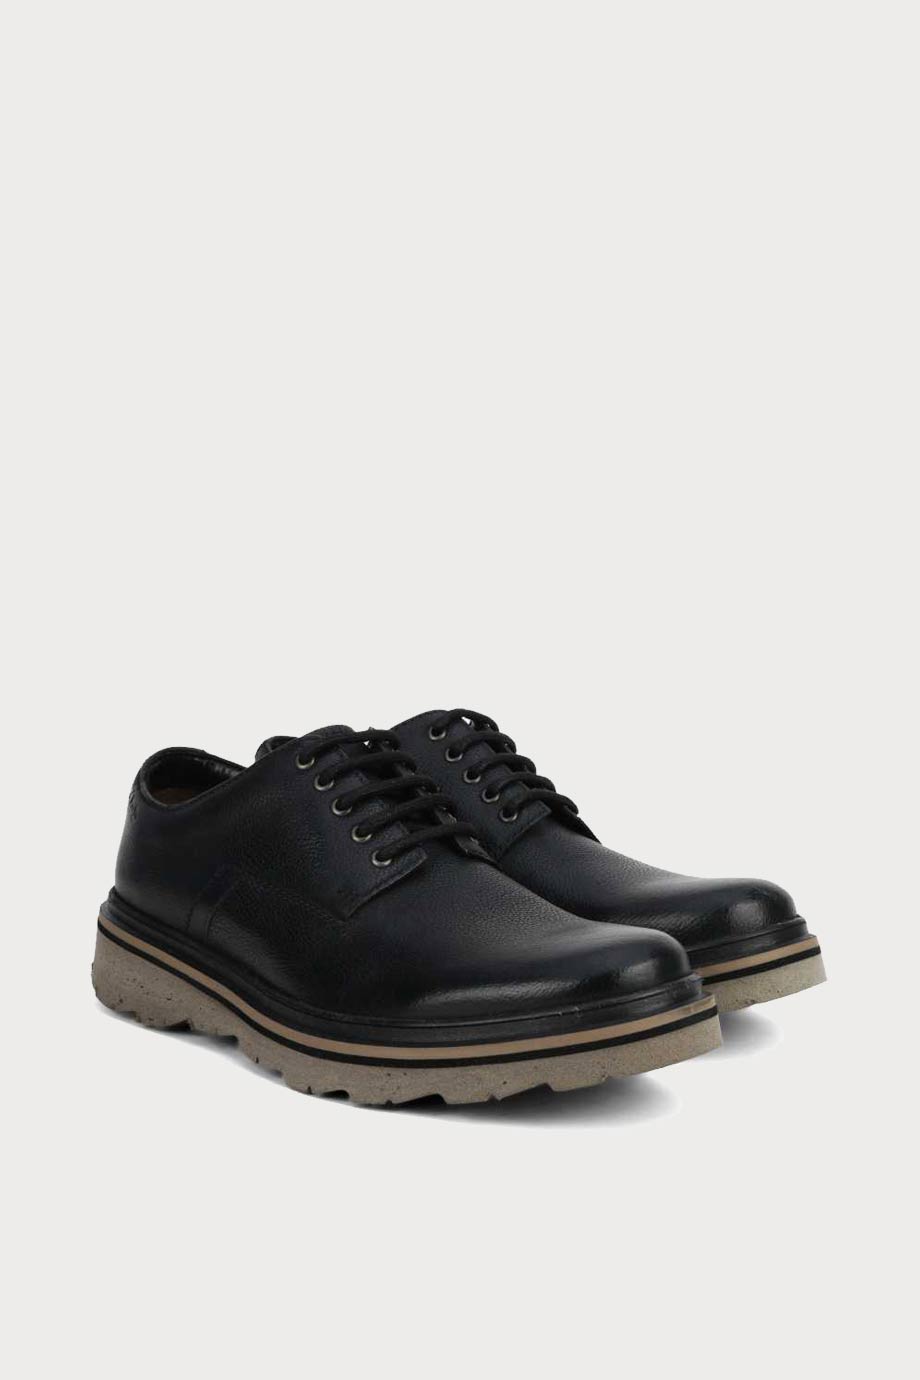 spiridoula metheniti shoes xalkida p frelan lace black leather clarks 3